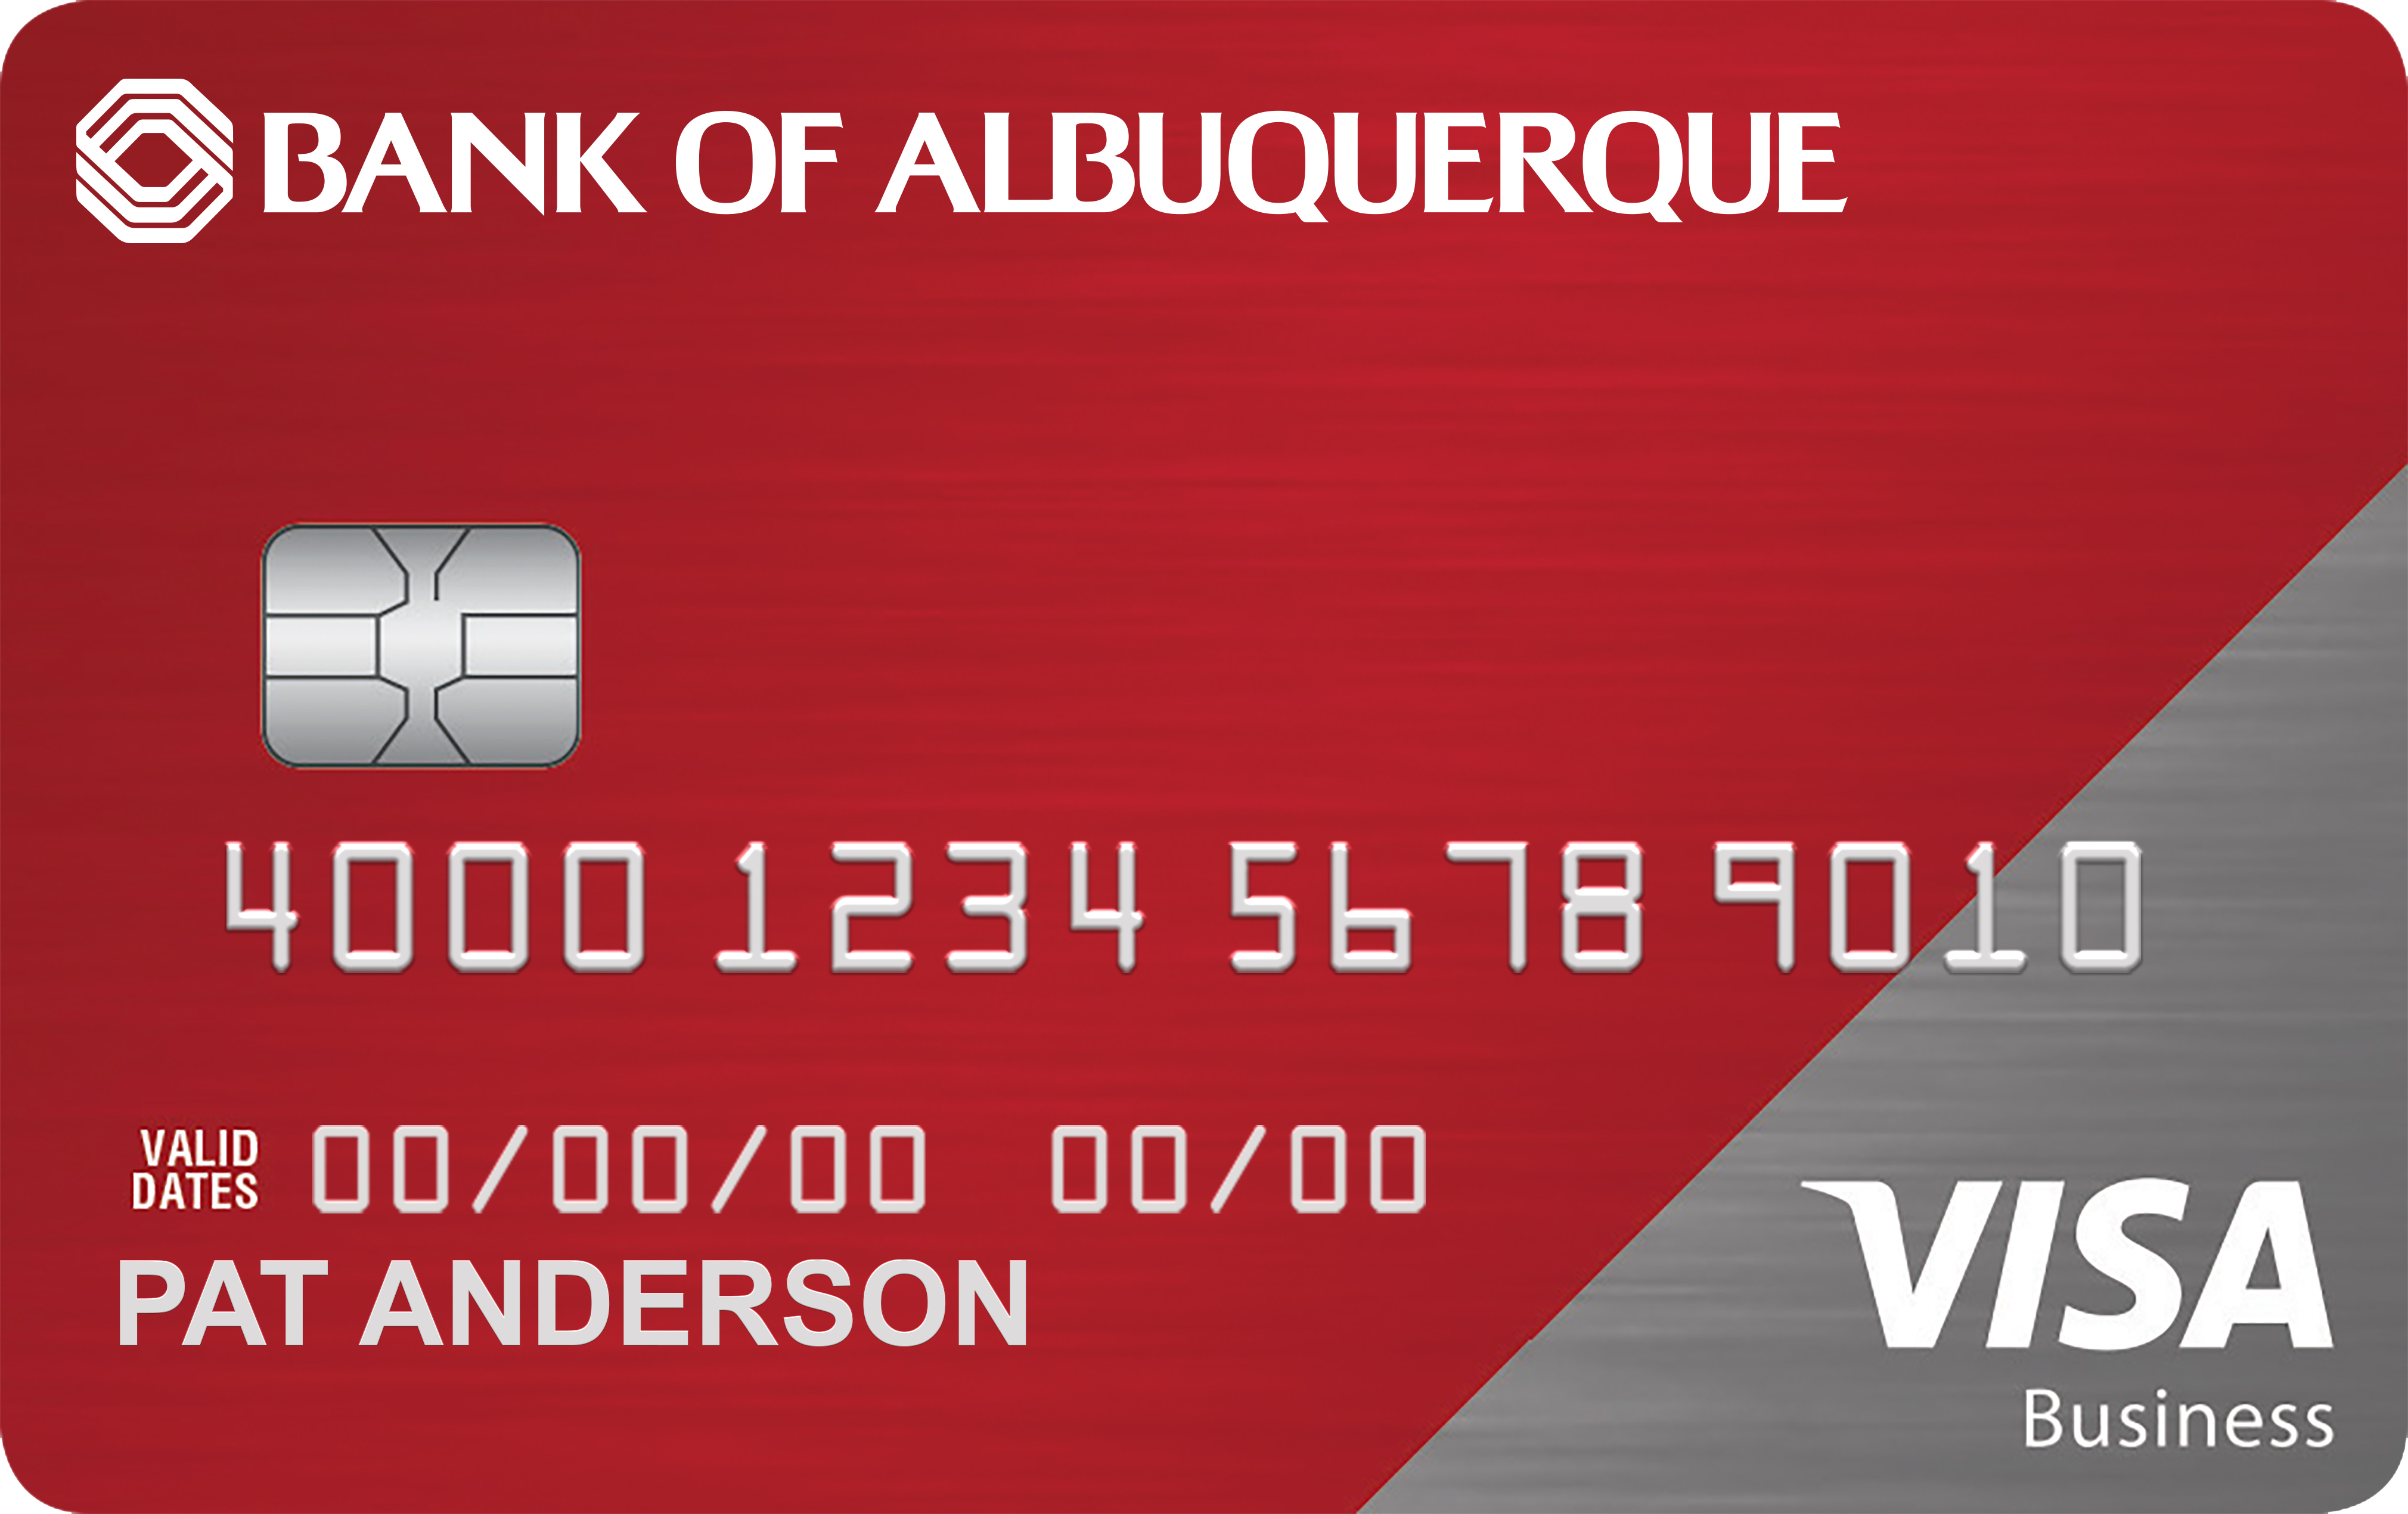 Bank of Albuquerque Smart Business Rewards Card